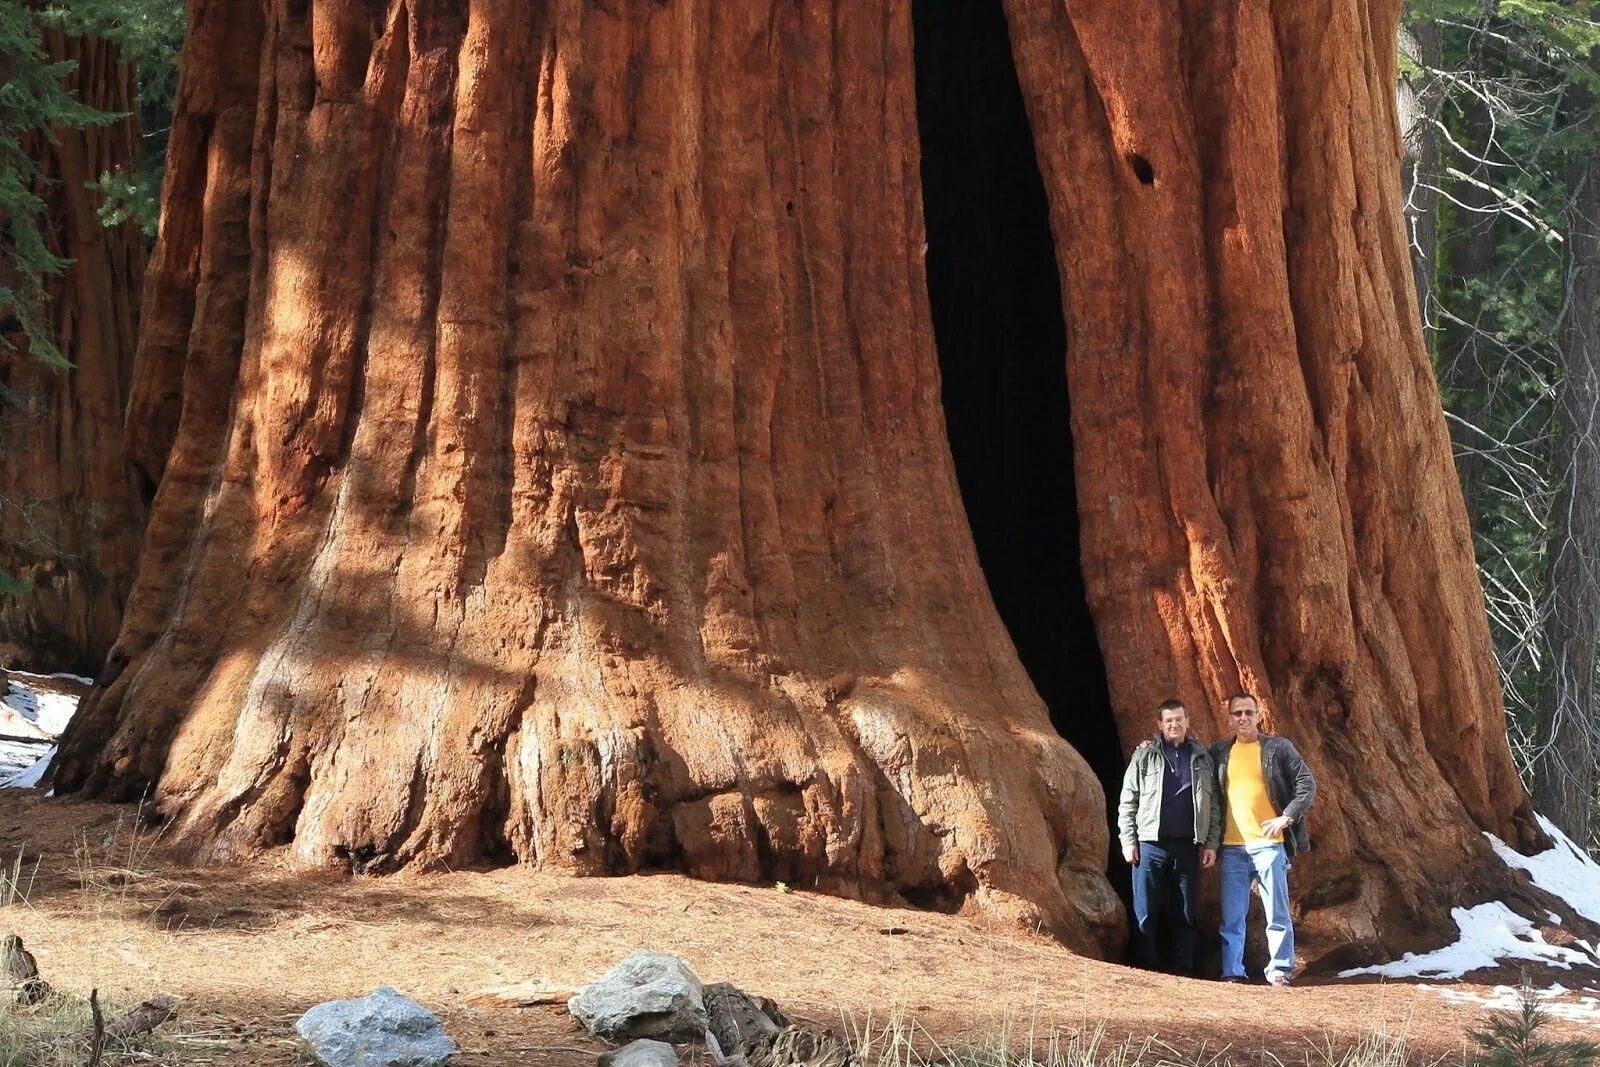 Секвойя дерево. Национальный парк «Секвойя», штат Калифорния, США. Генерал Шерман (дерево). Секвойядендрон генерал Шерман.